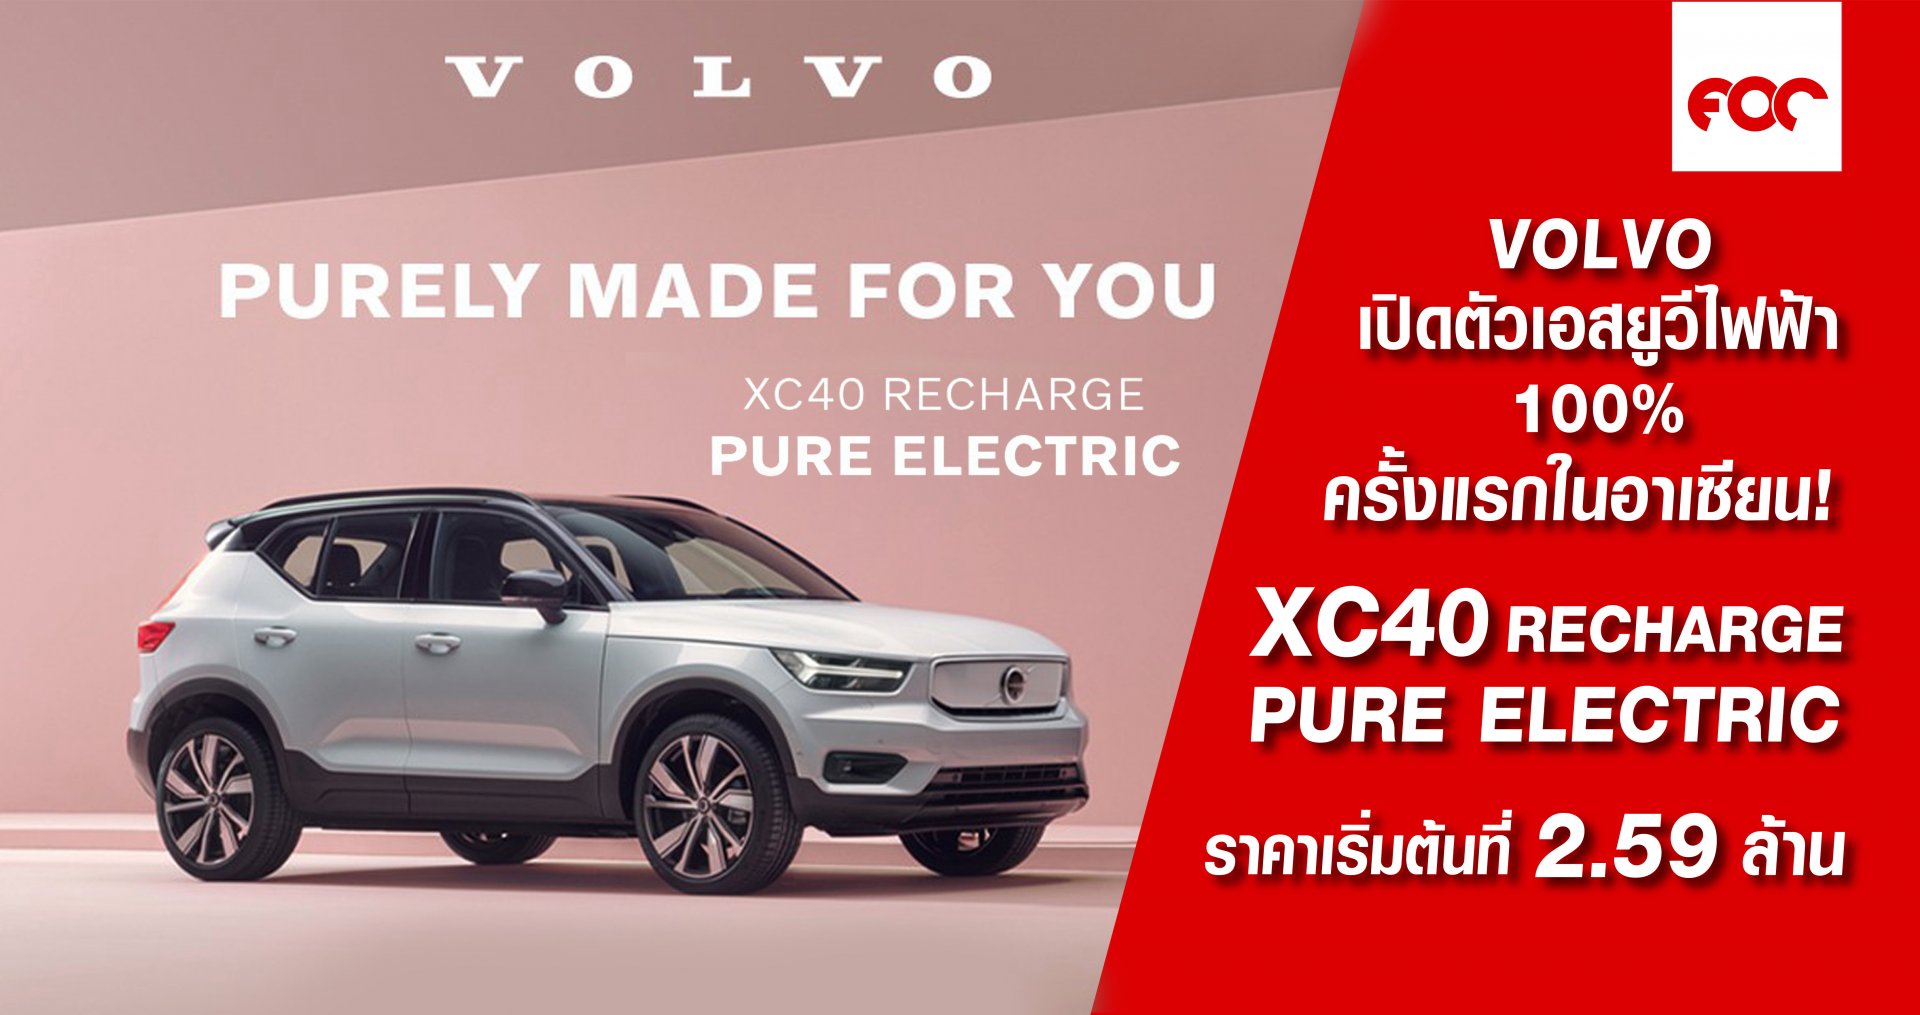 วอลโว่ คาร์ ประเทศไทย เปิดตัวเอสยูวีไฟฟ้า 100%  ครั้งแรกในประเทศไทยและอาเซียน  Volvo XC40 Recharge Pure Electric ราคาเปิดตัวเริ่มต้นที่ 2.59 ล้าน 